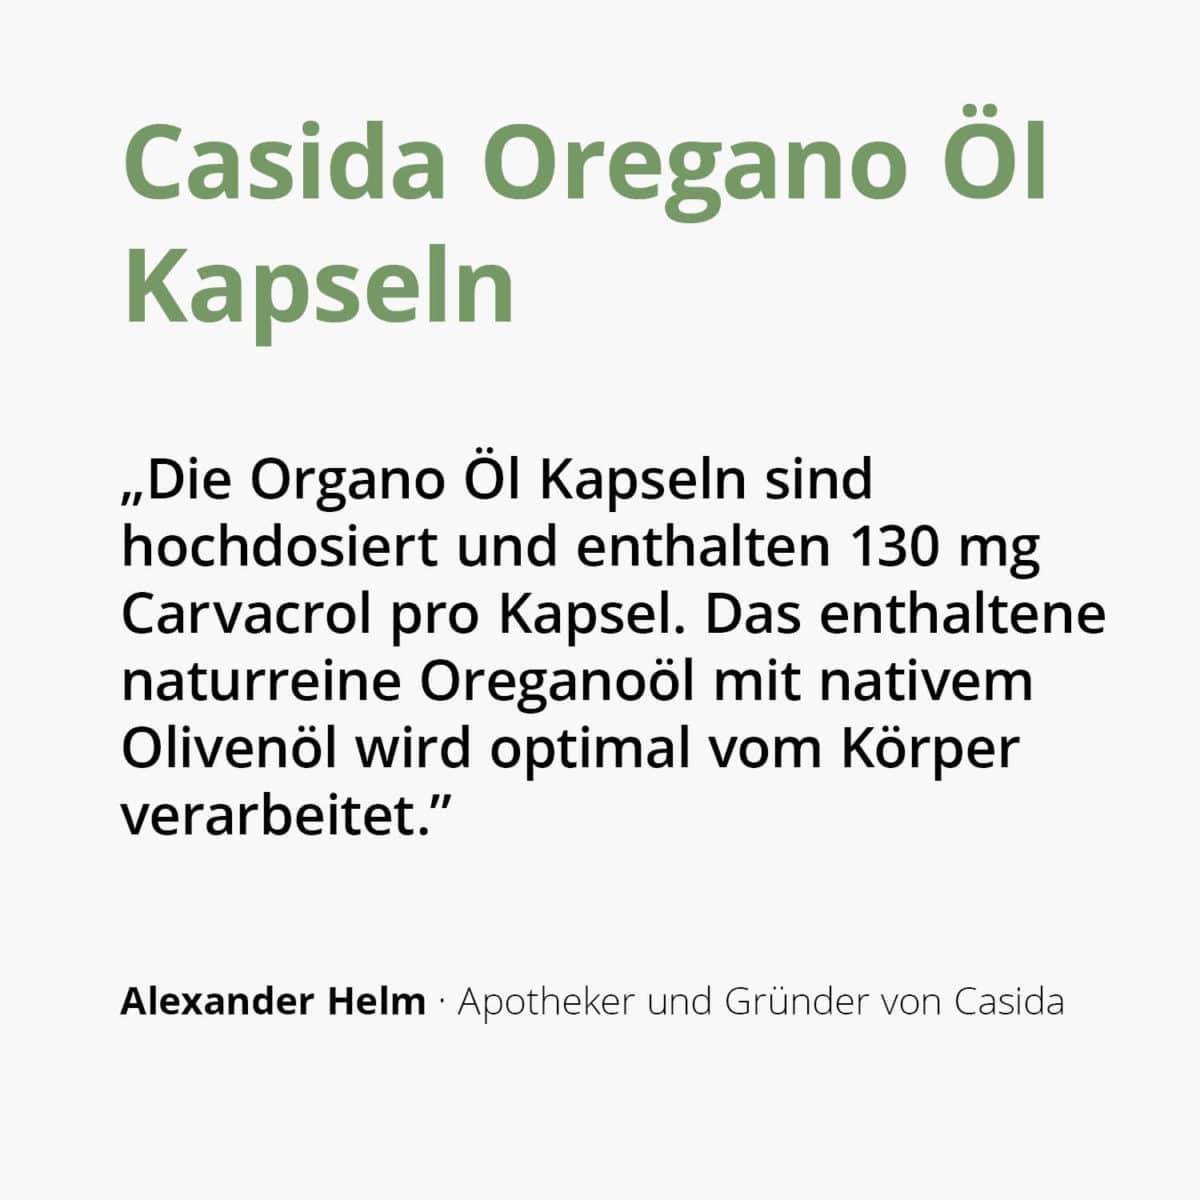 Casida Oregano Oil Capsules Origanum vulgare ssp. Hirtum naturrein 10 ml PZN DE 18181321 PZN AT 56793212